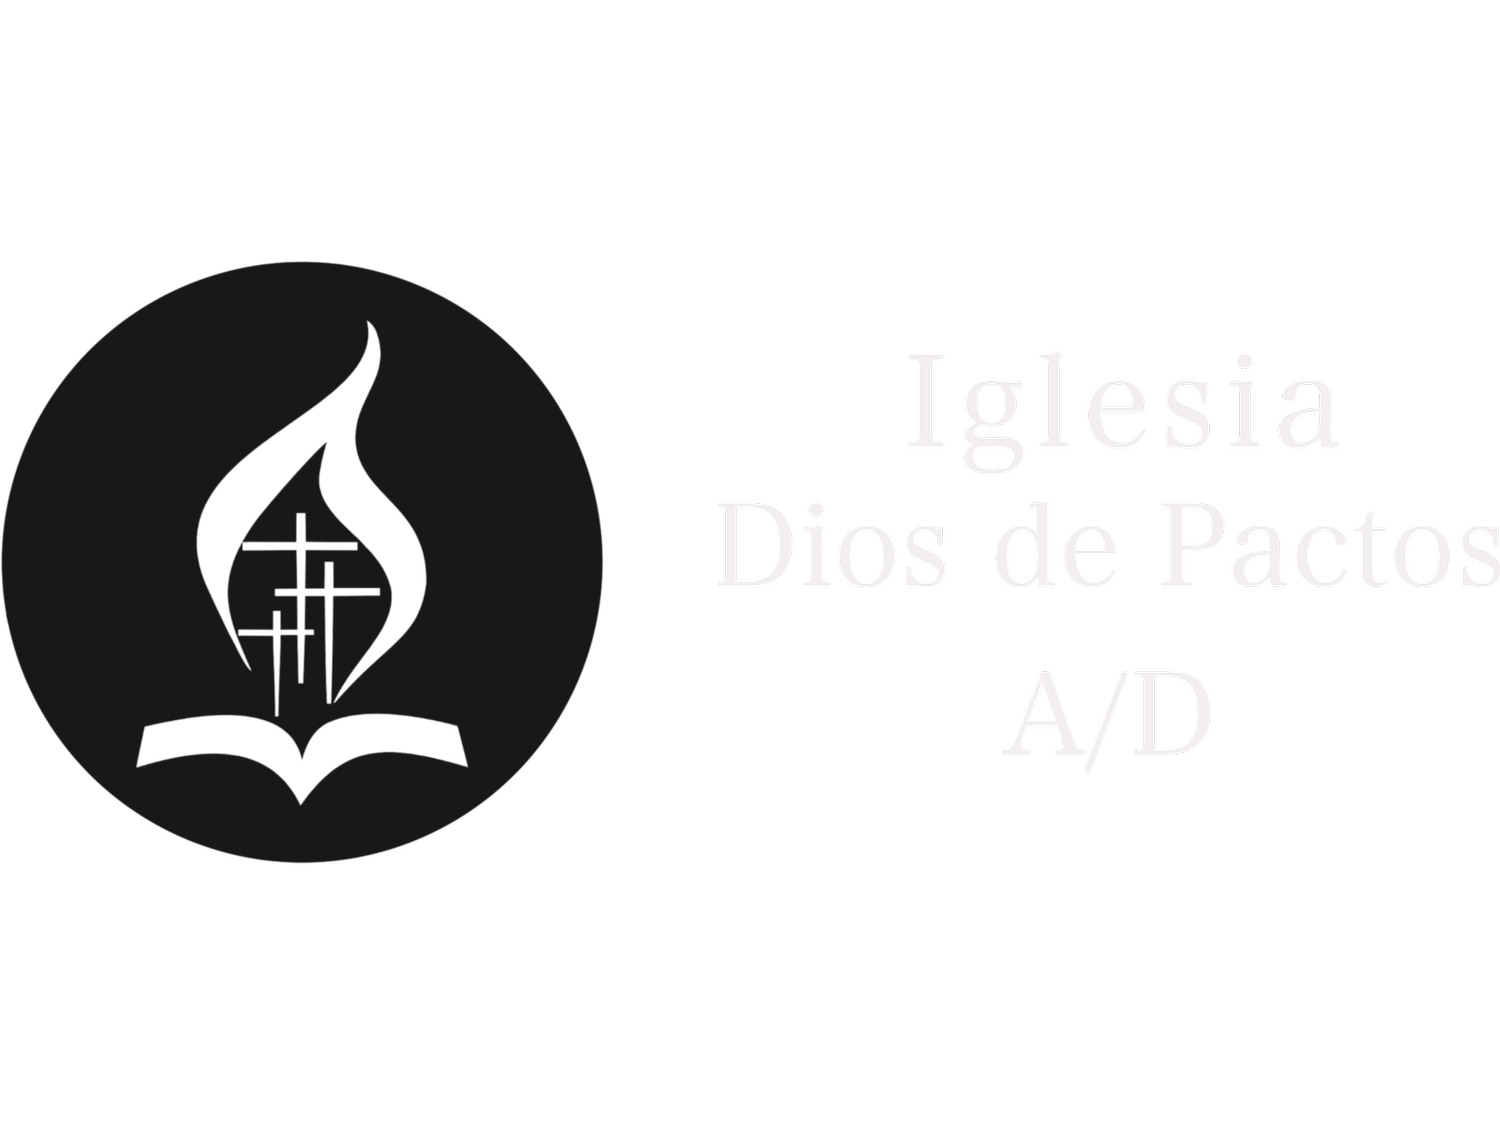 Iglesia Dios de Pactos A/D